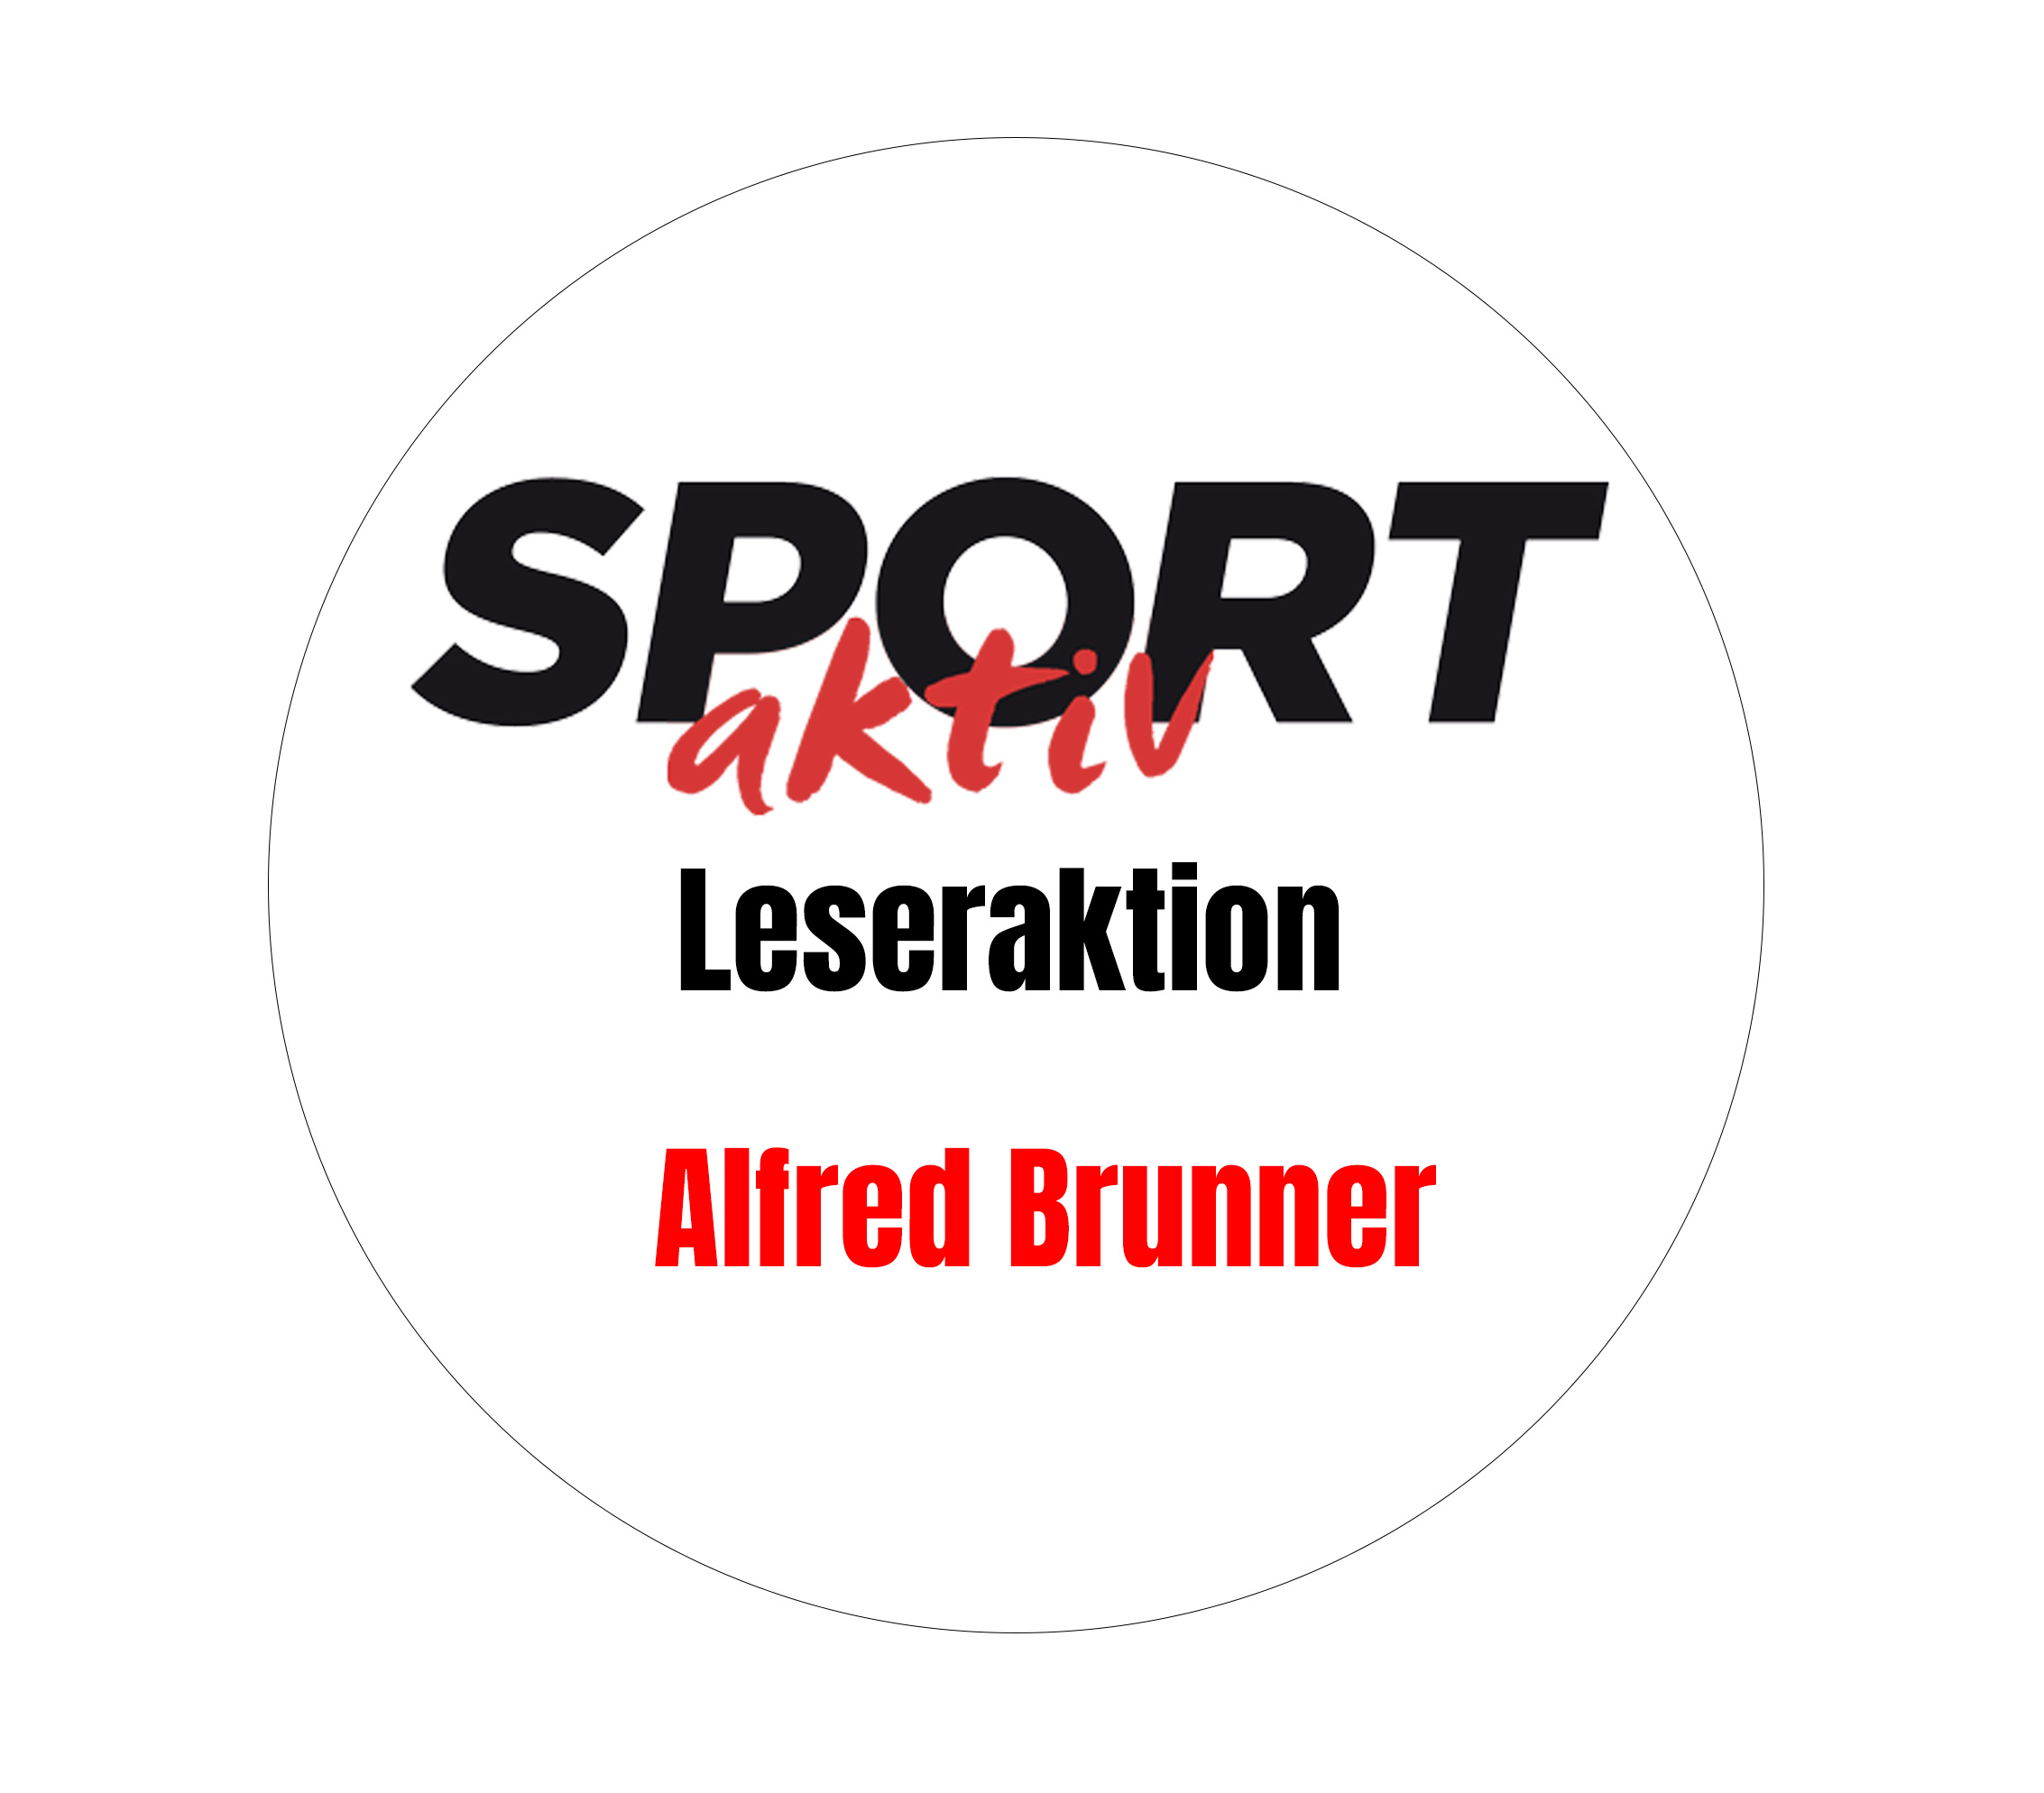 Alfred Brunner